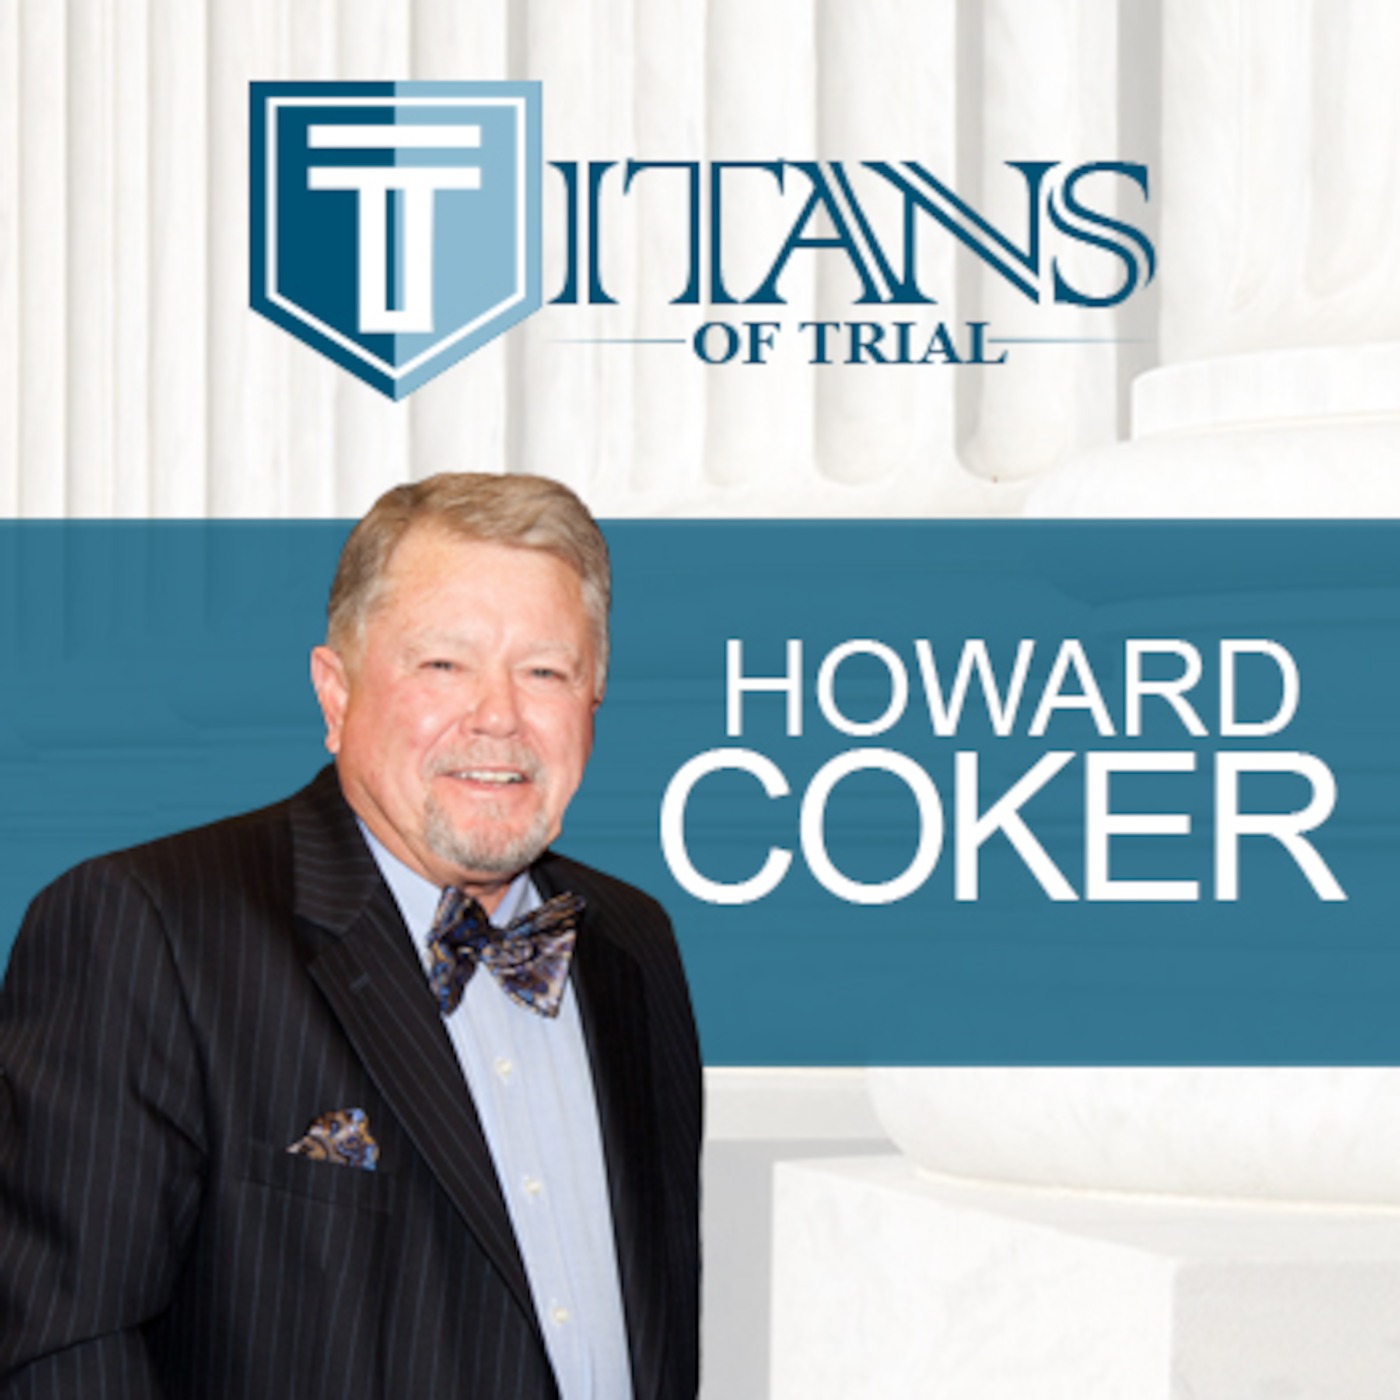 Titans of Trial - Howard Coker